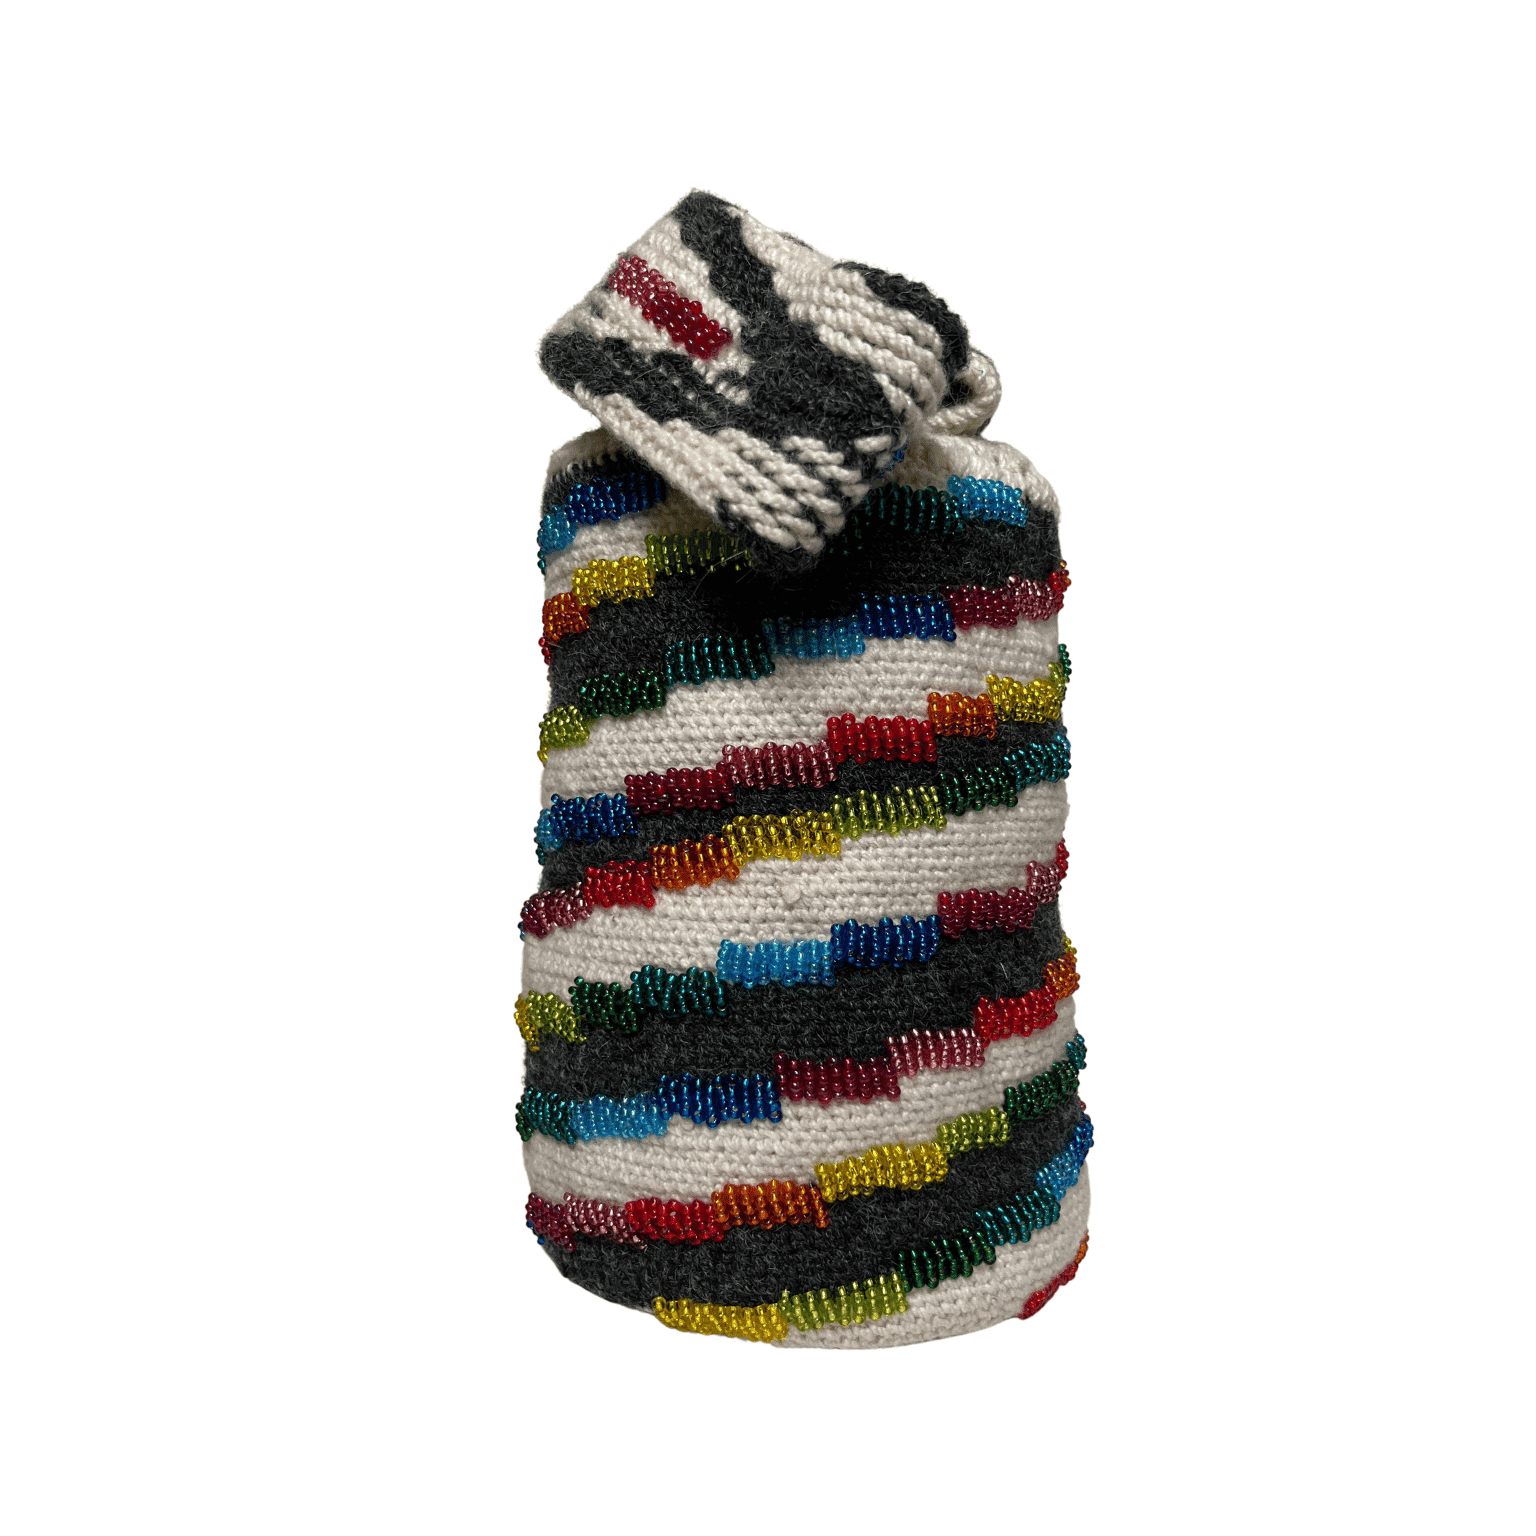 Mochila arhuaca de mujer diseño Caracol decorada con chaquiras de todos los colores